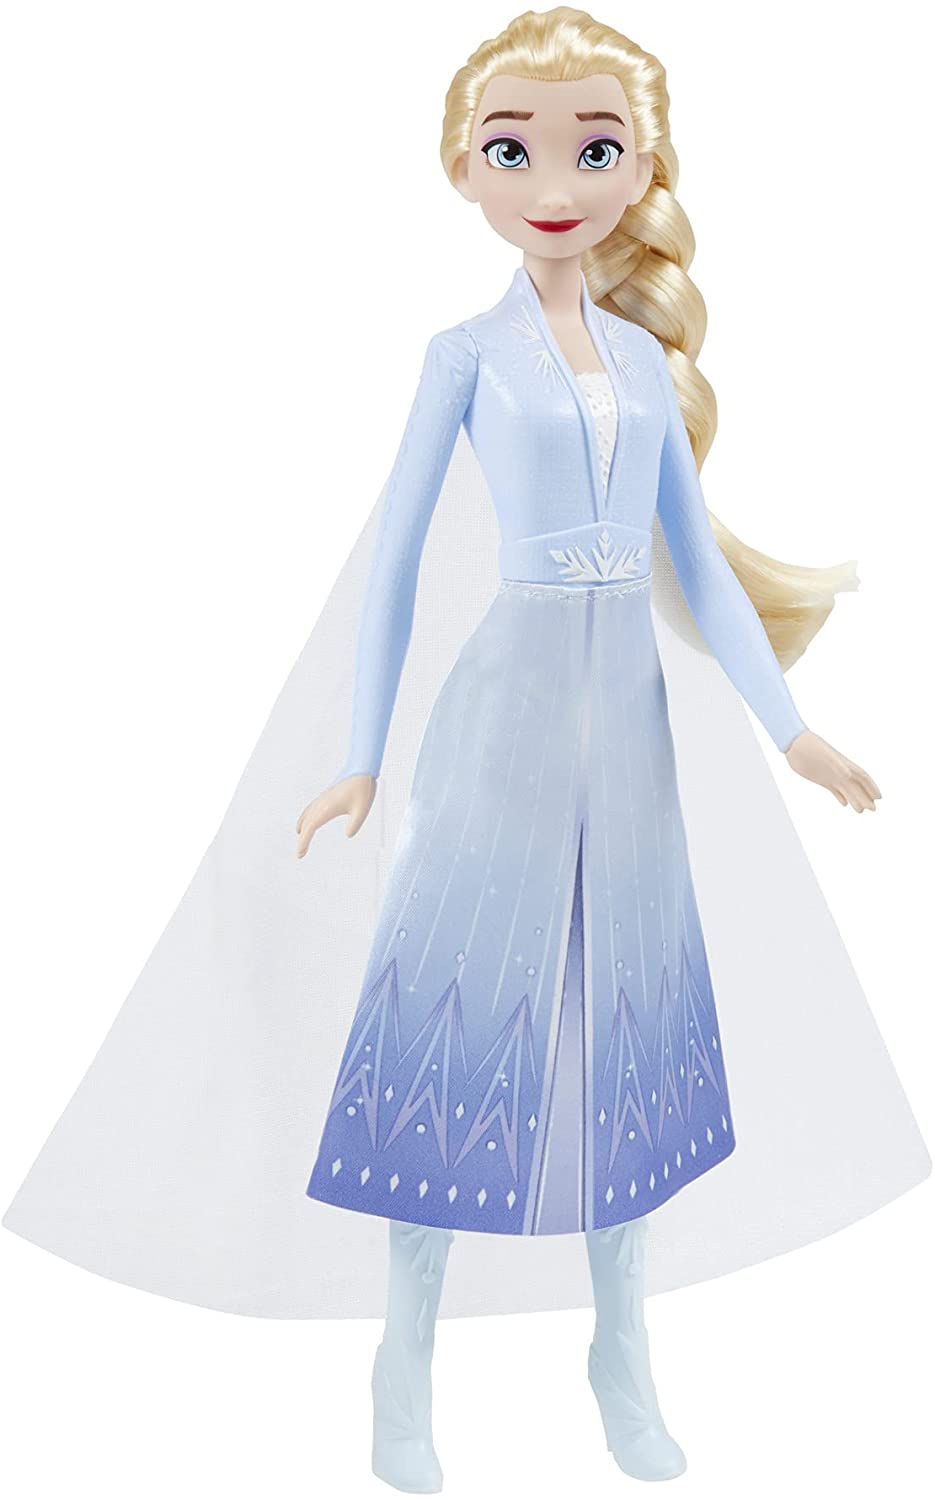 ディズニー アナと雪の女王 2 シマー ドール エルサ 人形 アナ雪 プリンセス 並行輸入品